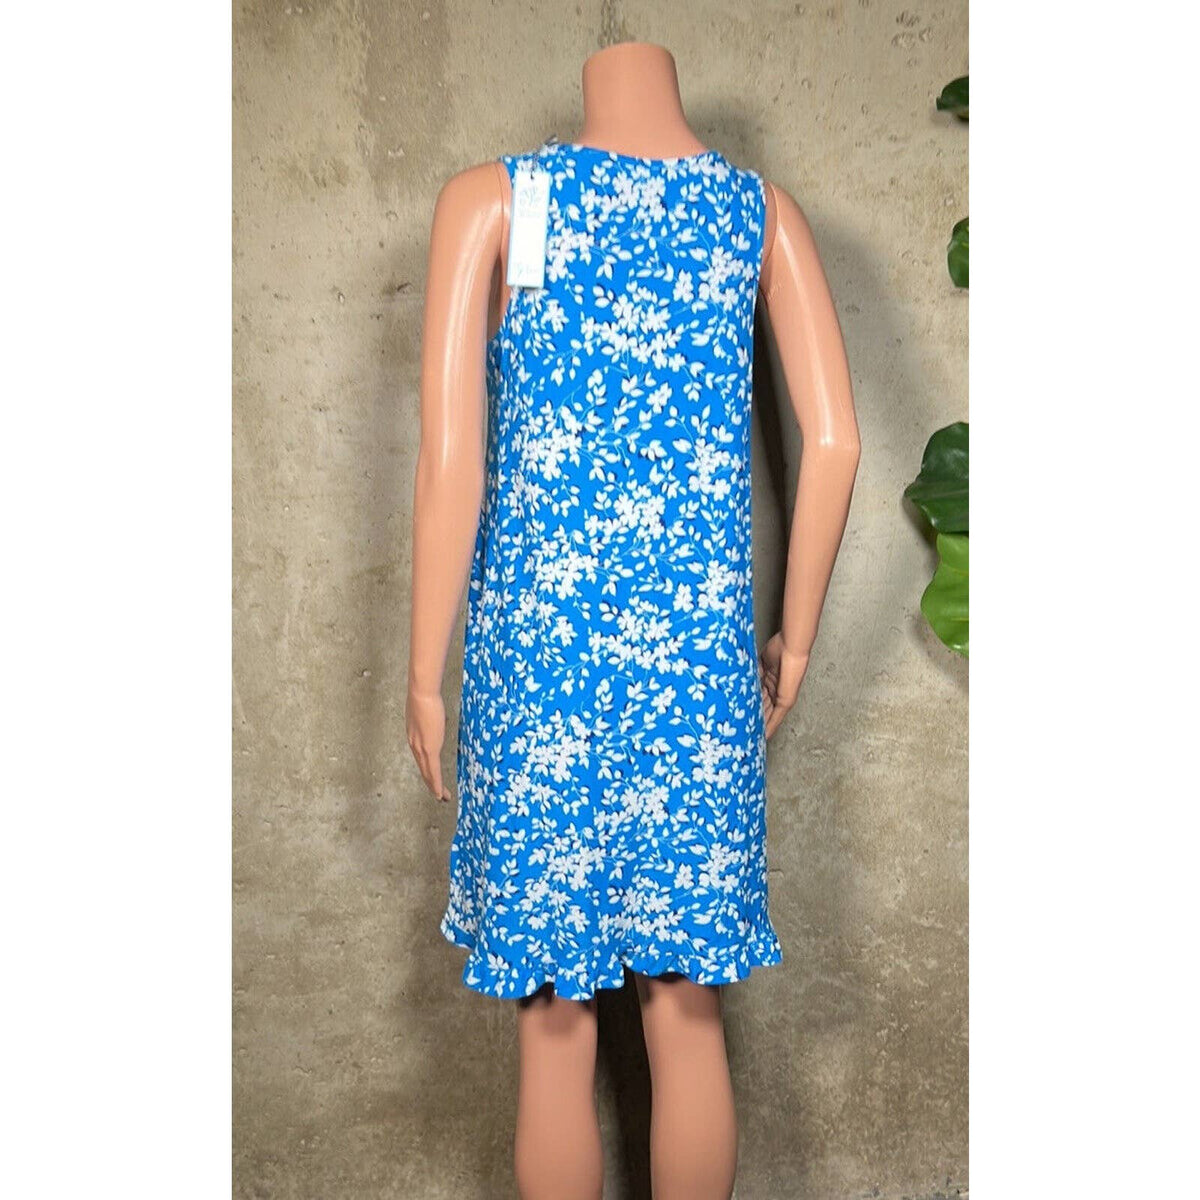 Draper Jamed Blue Floral Dress Sz. Small NEW